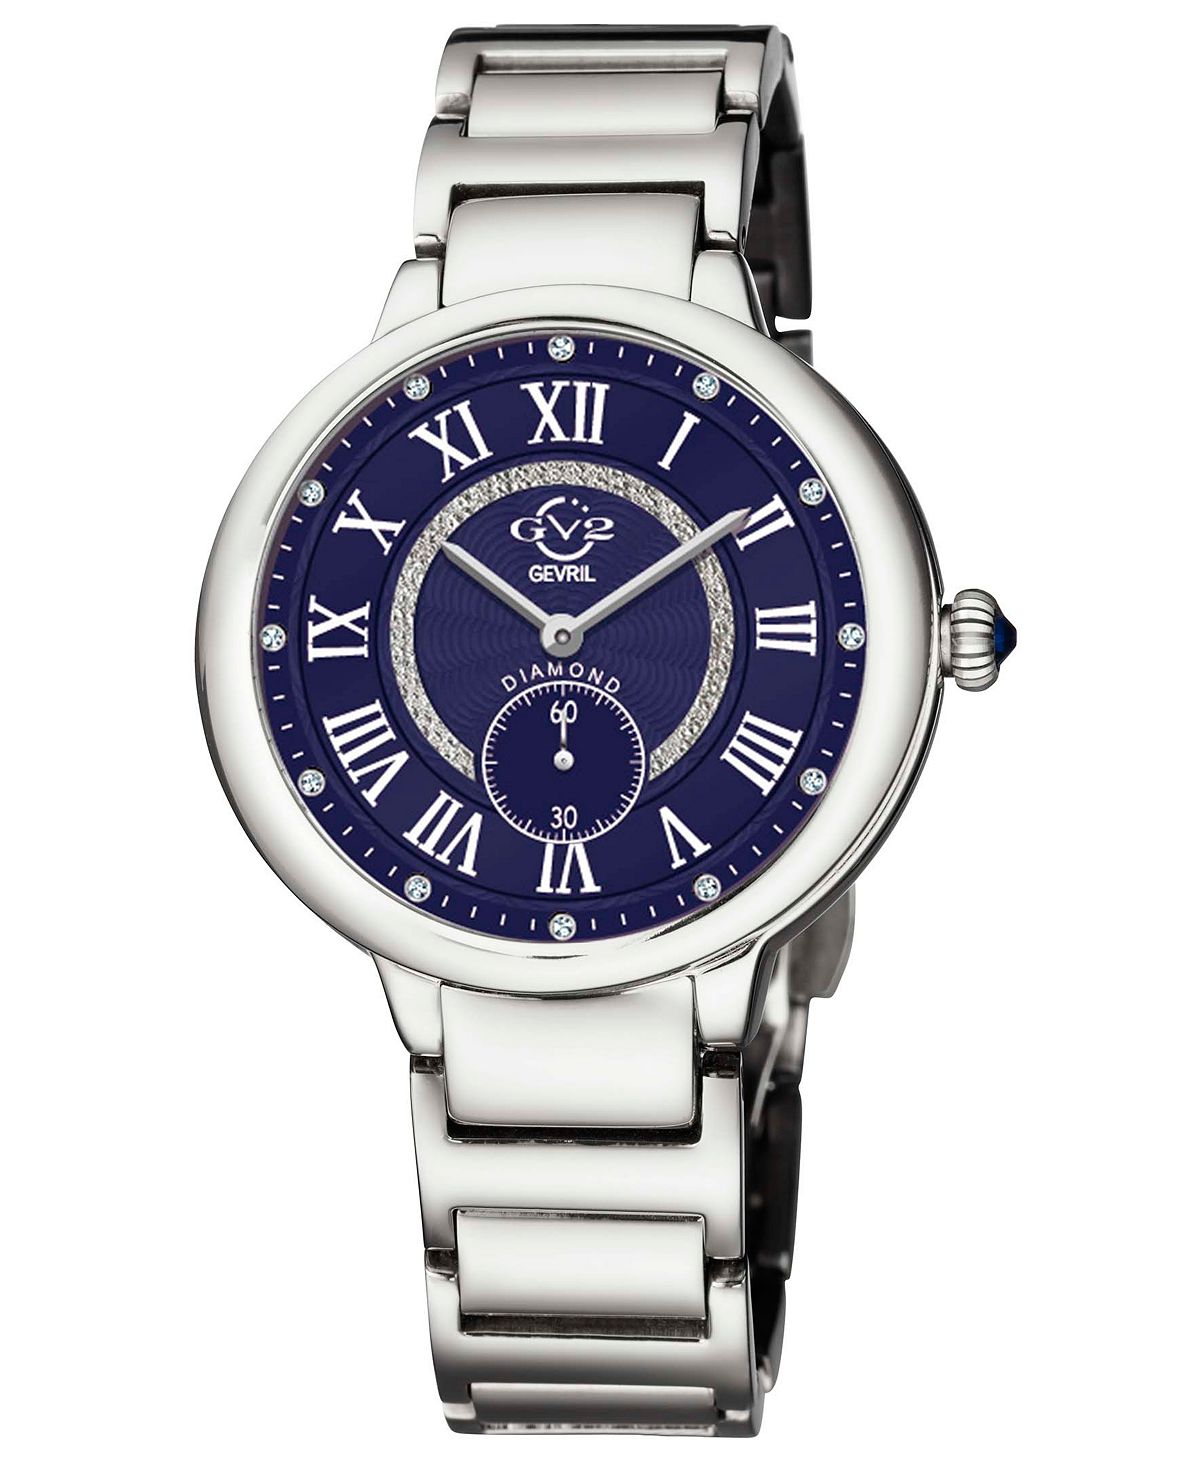 цена Женские часы Rome швейцарские кварцевые серебристого цвета из нержавеющей стали 36 мм GV2 by Gevril, серебро